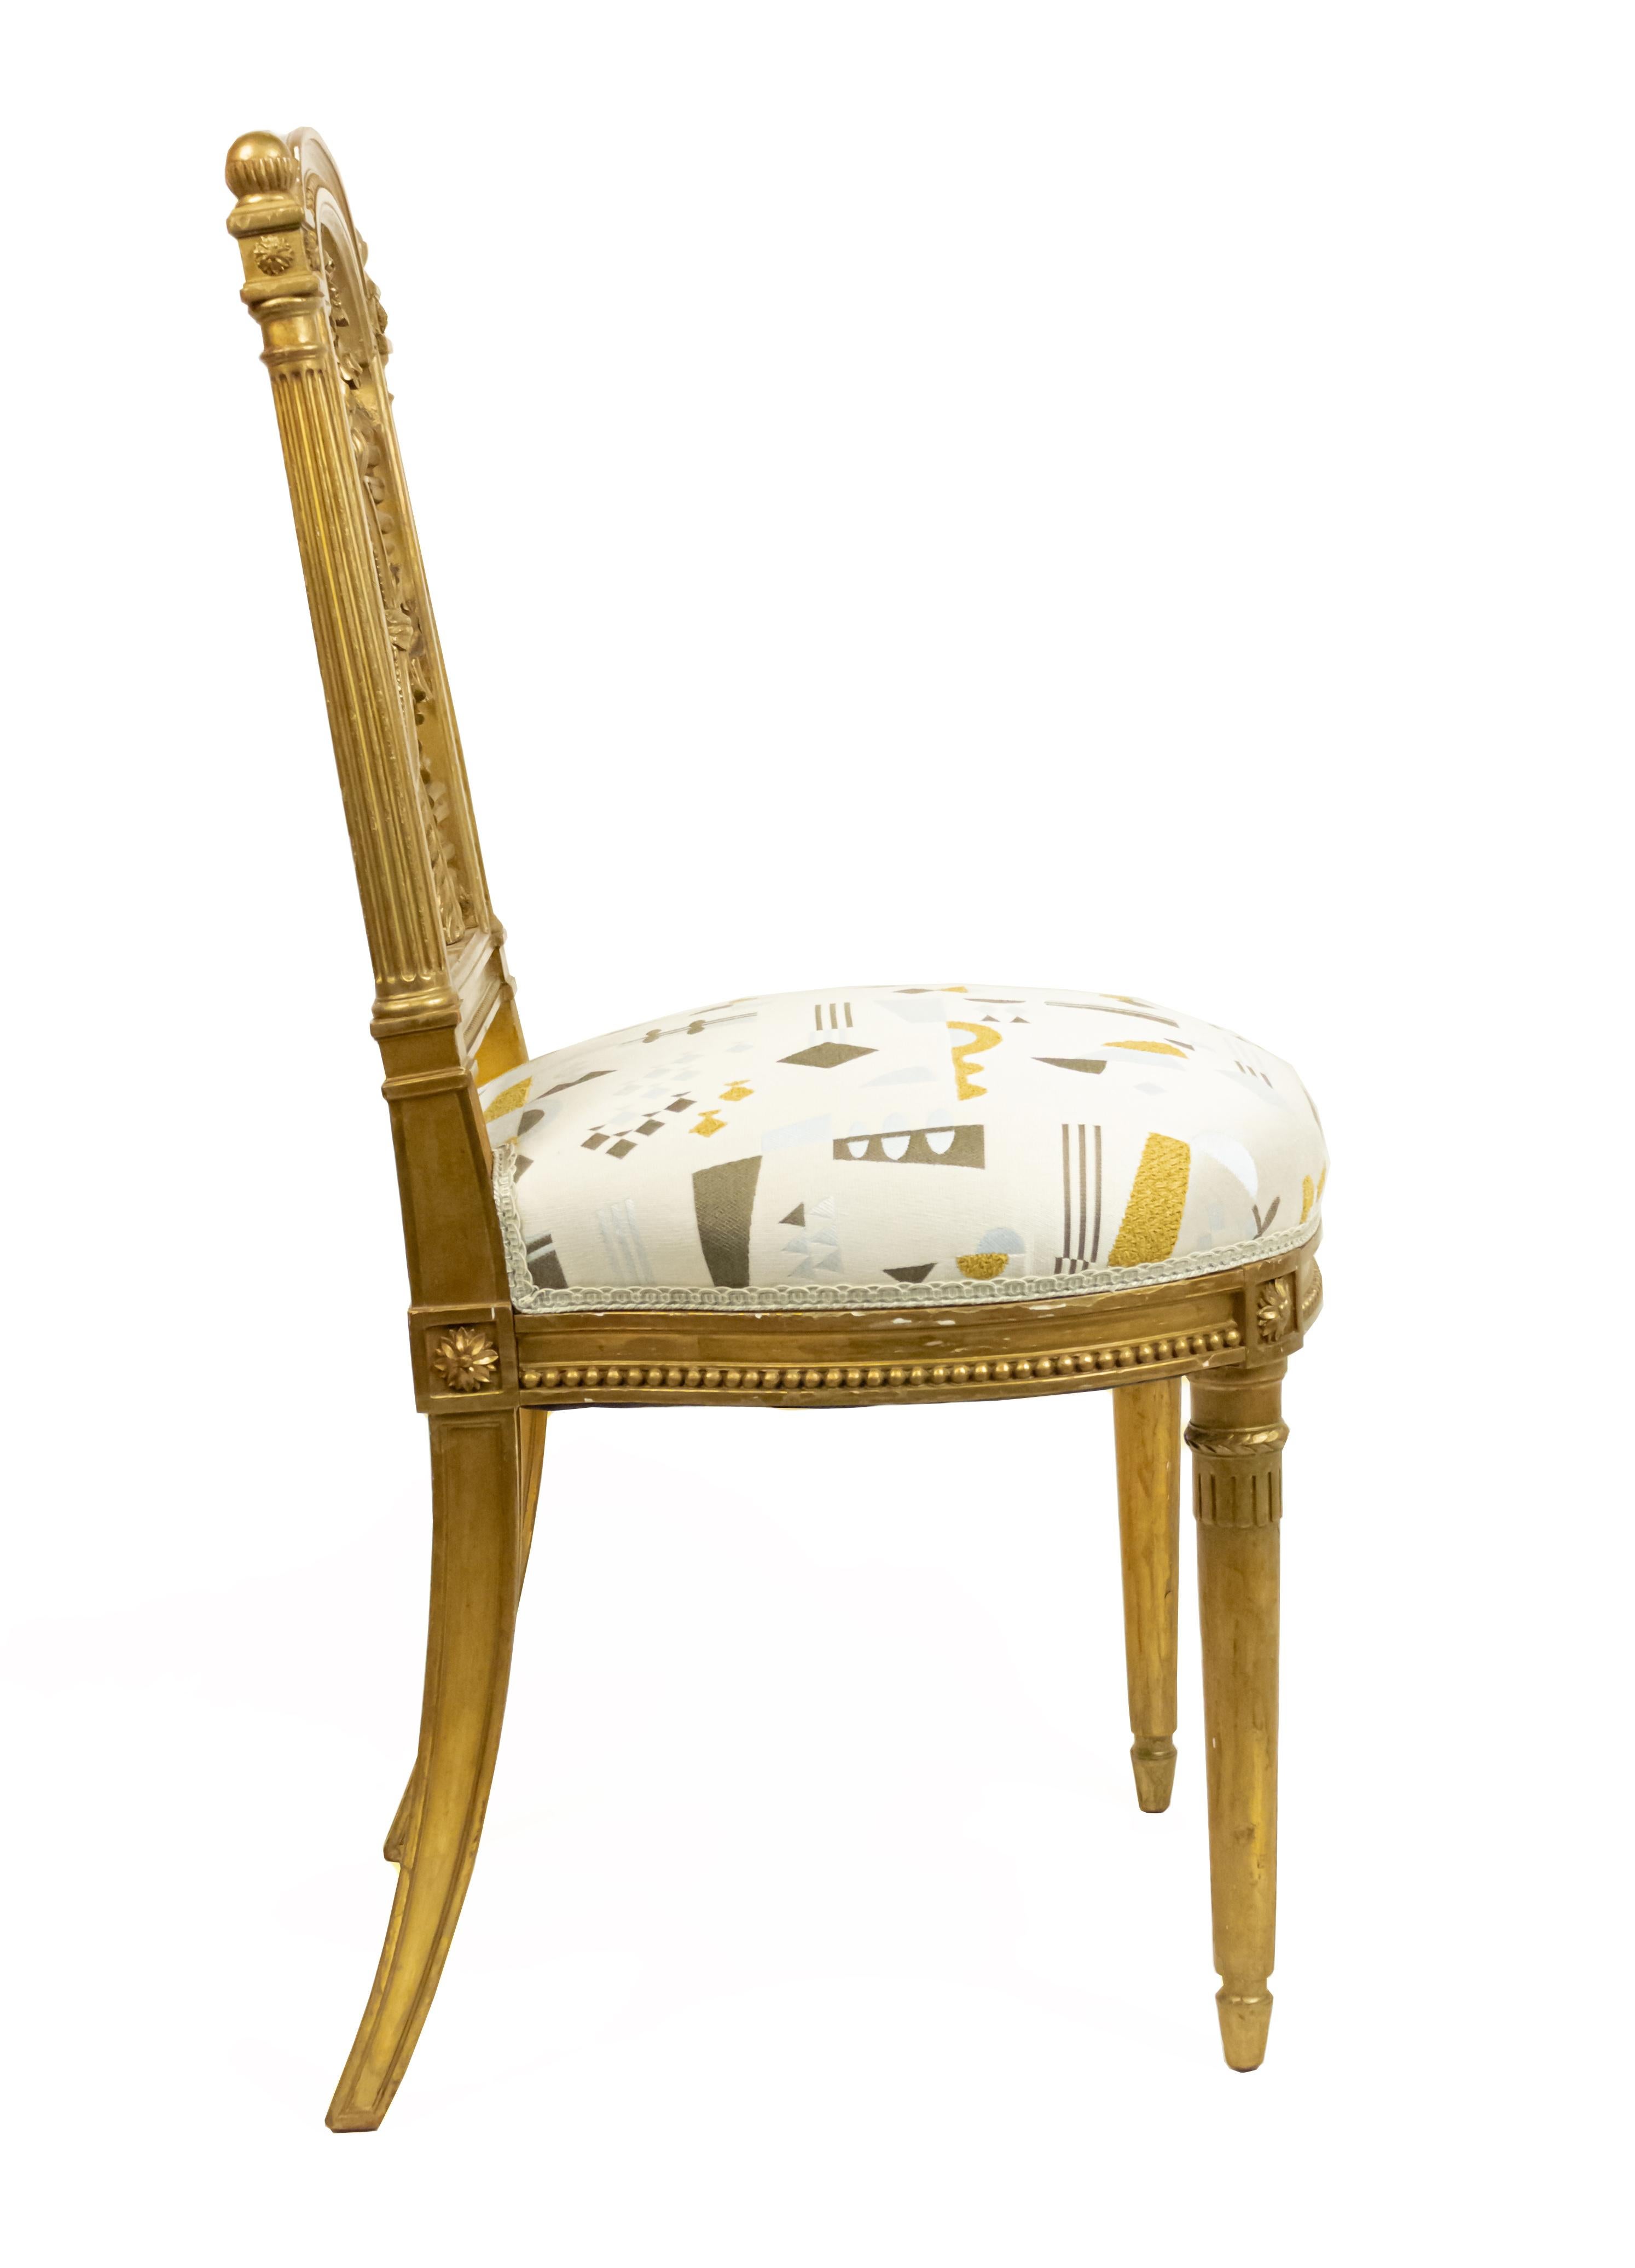 Paire de chaises d'appoint françaises de style Louis XVI du 19ème siècle avec dossier sculpté d'une couronne et d'une flèche et des initiales MA (Marie Antoinette) avec tapisserie géométrique contemporaine blanc cassé multicolore.